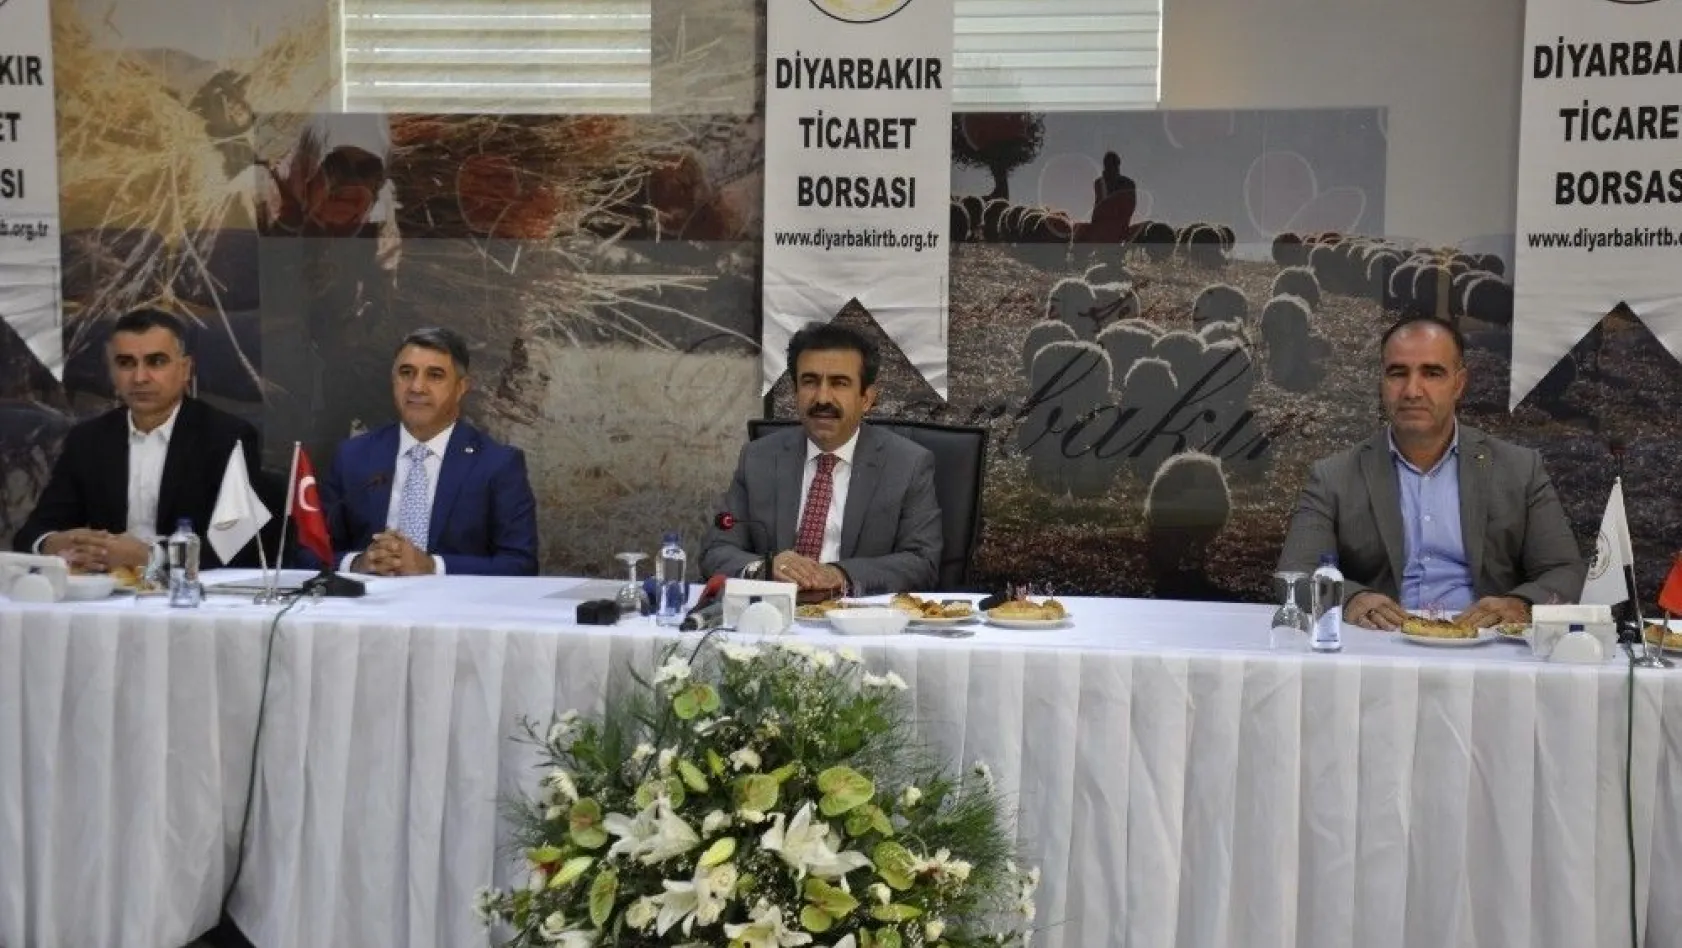 'Diyarbakır'ın geleceğine umutla bakıyoruz'
